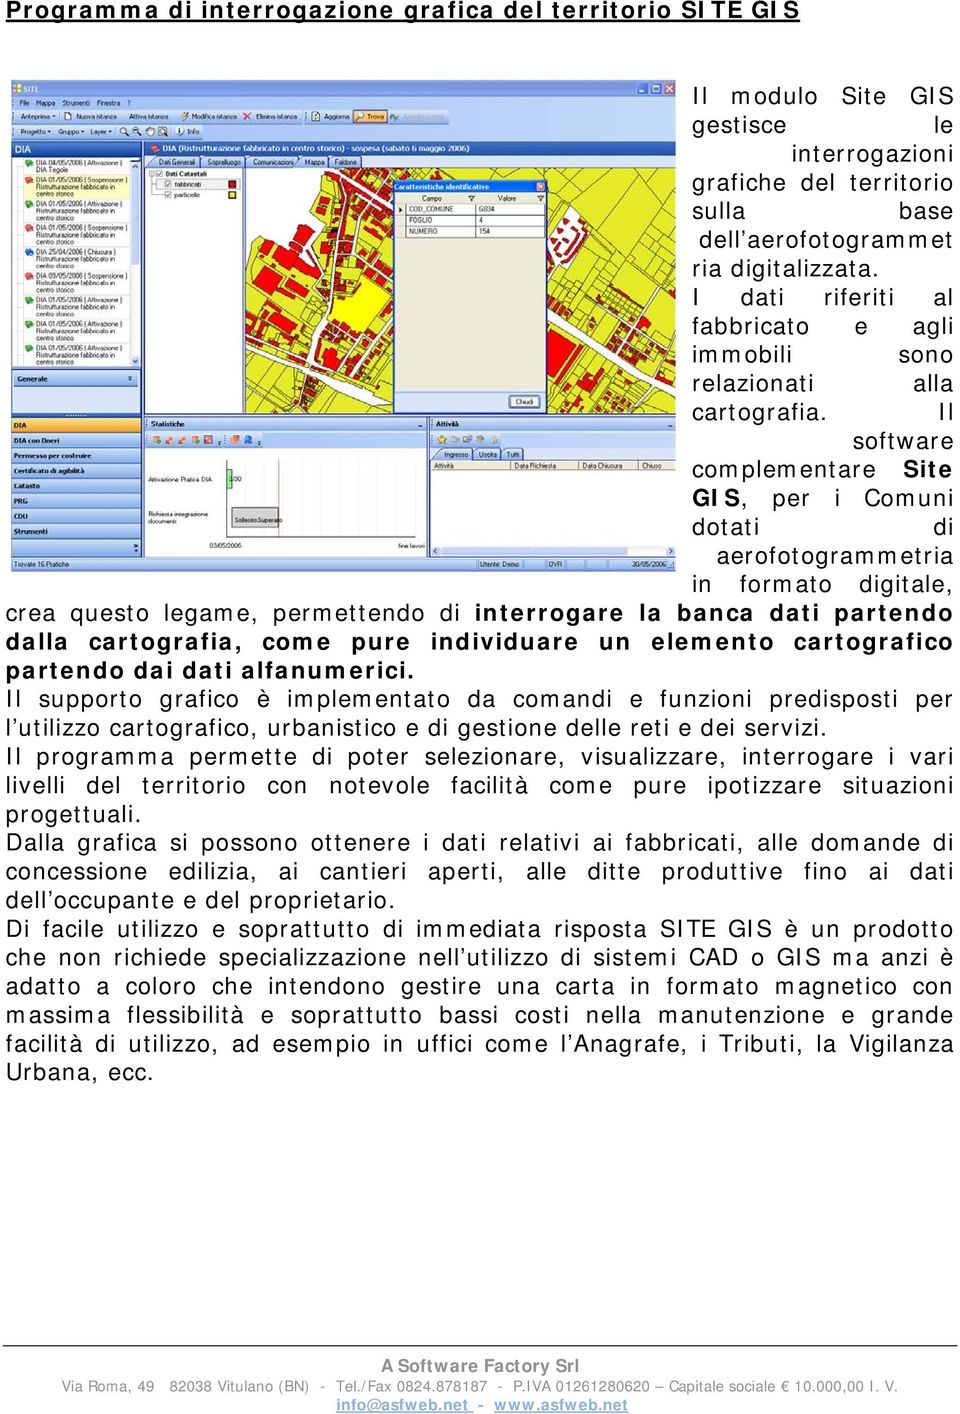 Il software complementare Site GIS, per i Comuni dotati di aerofotogrammetria in formato digitale, crea questo legame, permettendo di interrogare la banca dati partendo dalla cartografia, come pure